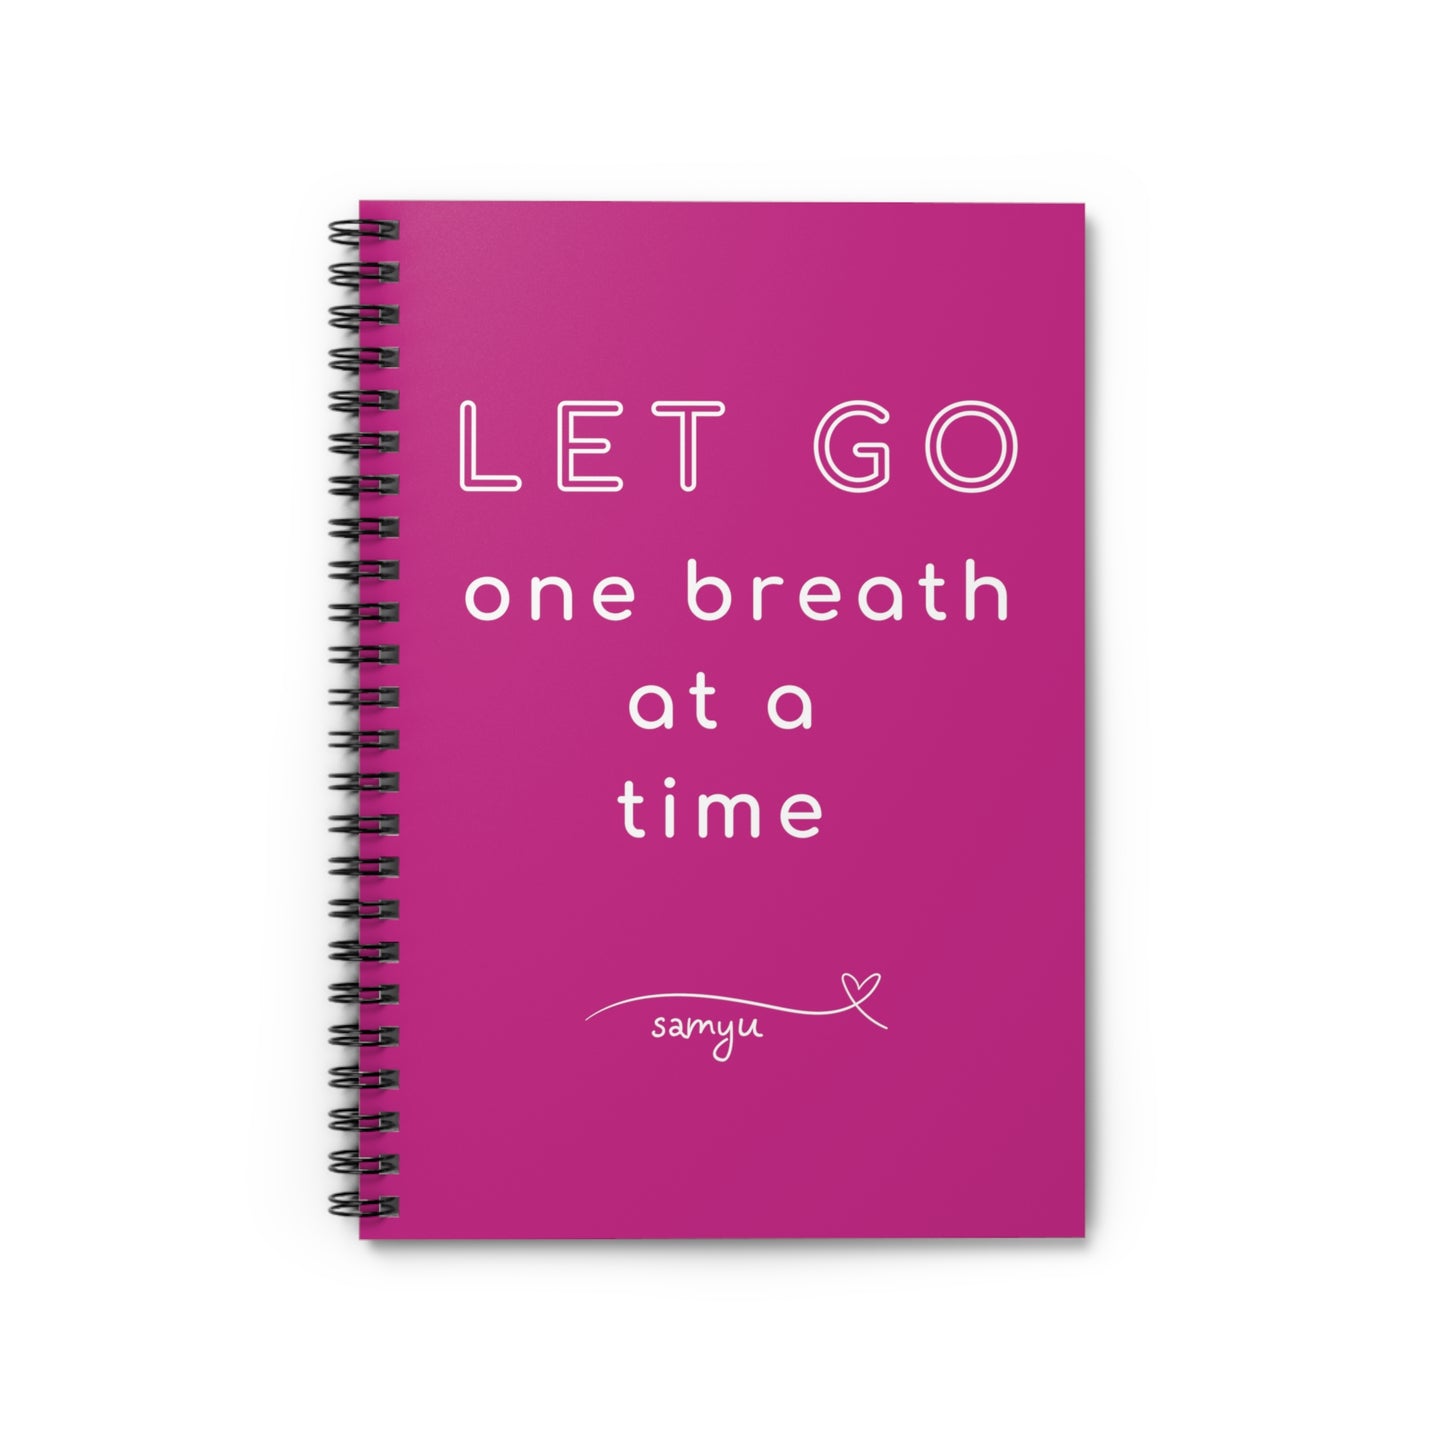 Let Go | Spiral Notebook - Ruled Line